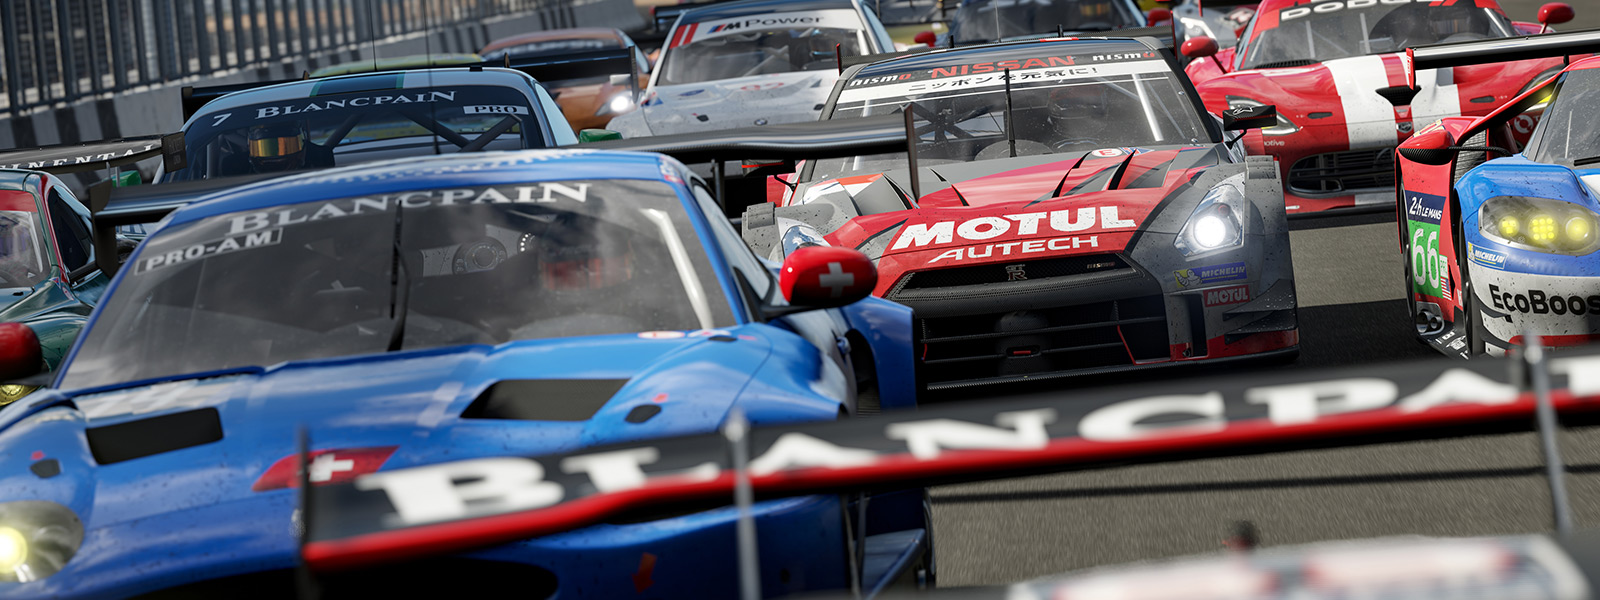 遊戲 Forza Motorsport 7 中 Forza 賽車起跑線的正面圖